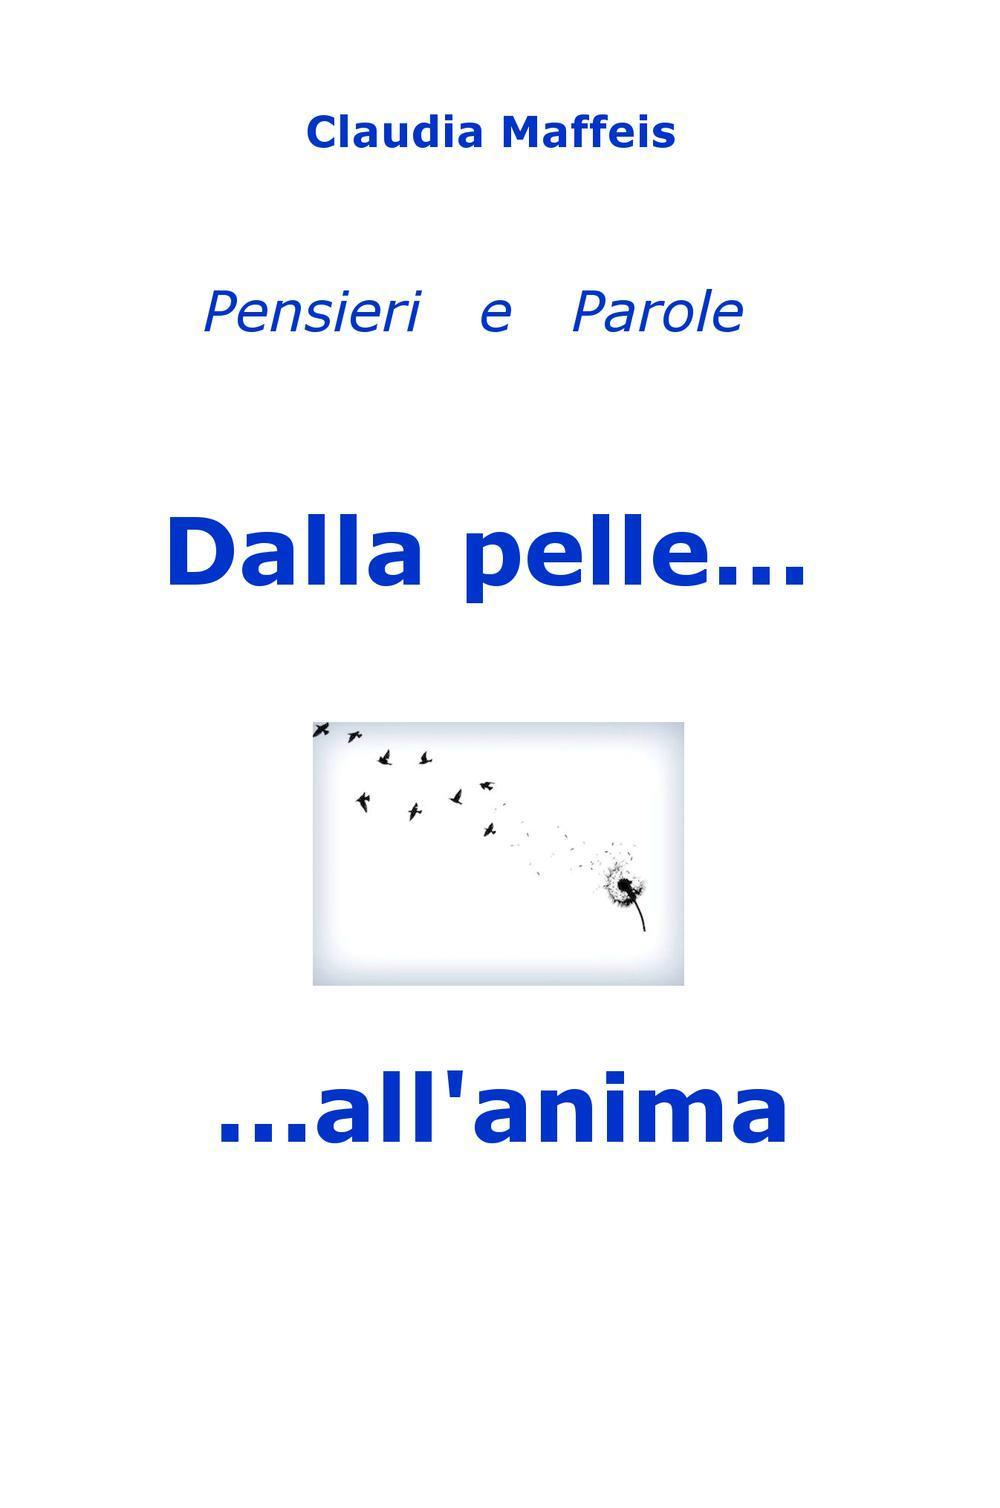 Image of Dalla pelle... all'anima. Pensieri & parole